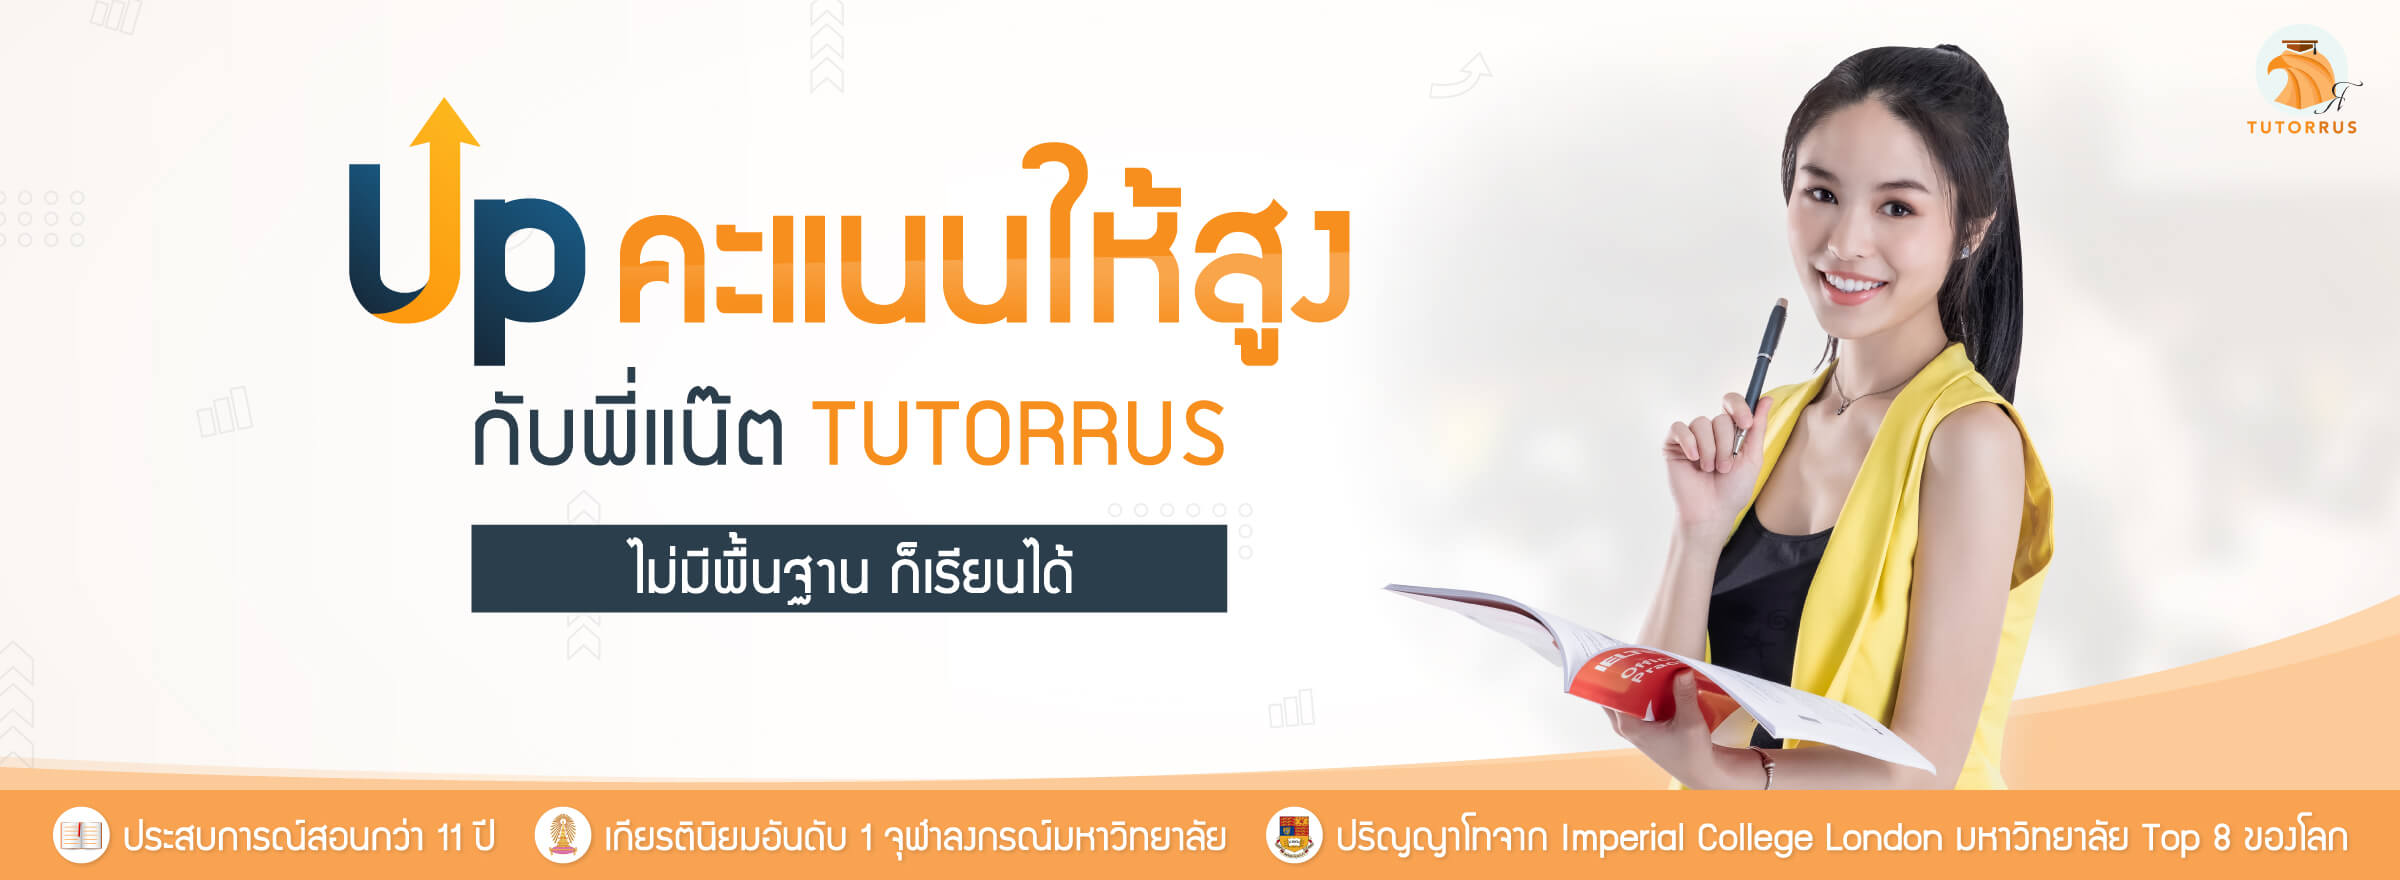 Tutorrus | ติวสอบเข้าจุฬาฯ ธรรมศาสตร์ (ทั้งภาคไทยและอินเตอร์)